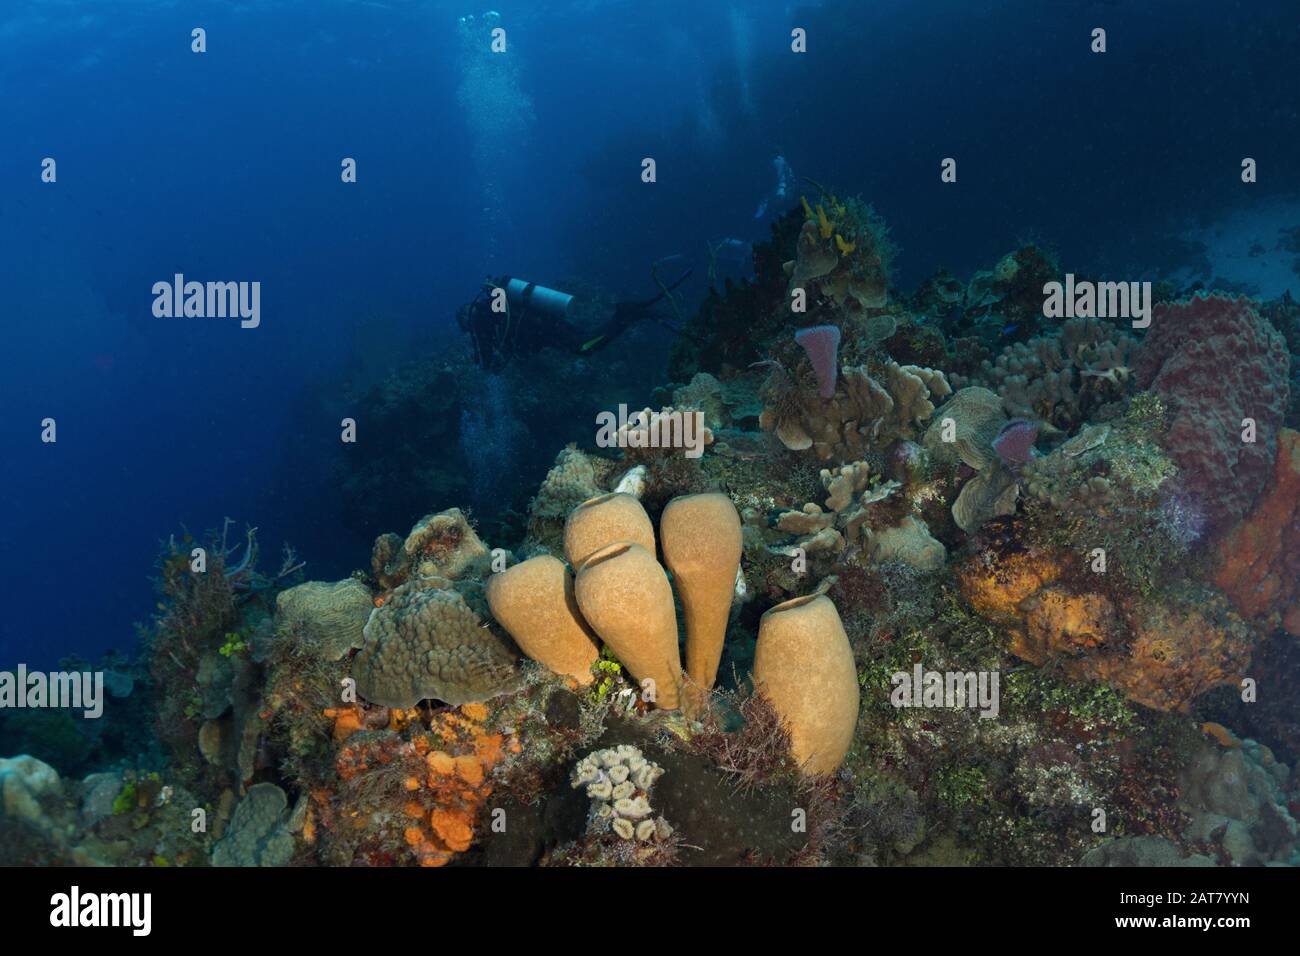 reef scene,sponge, sea fan, Stock Photo